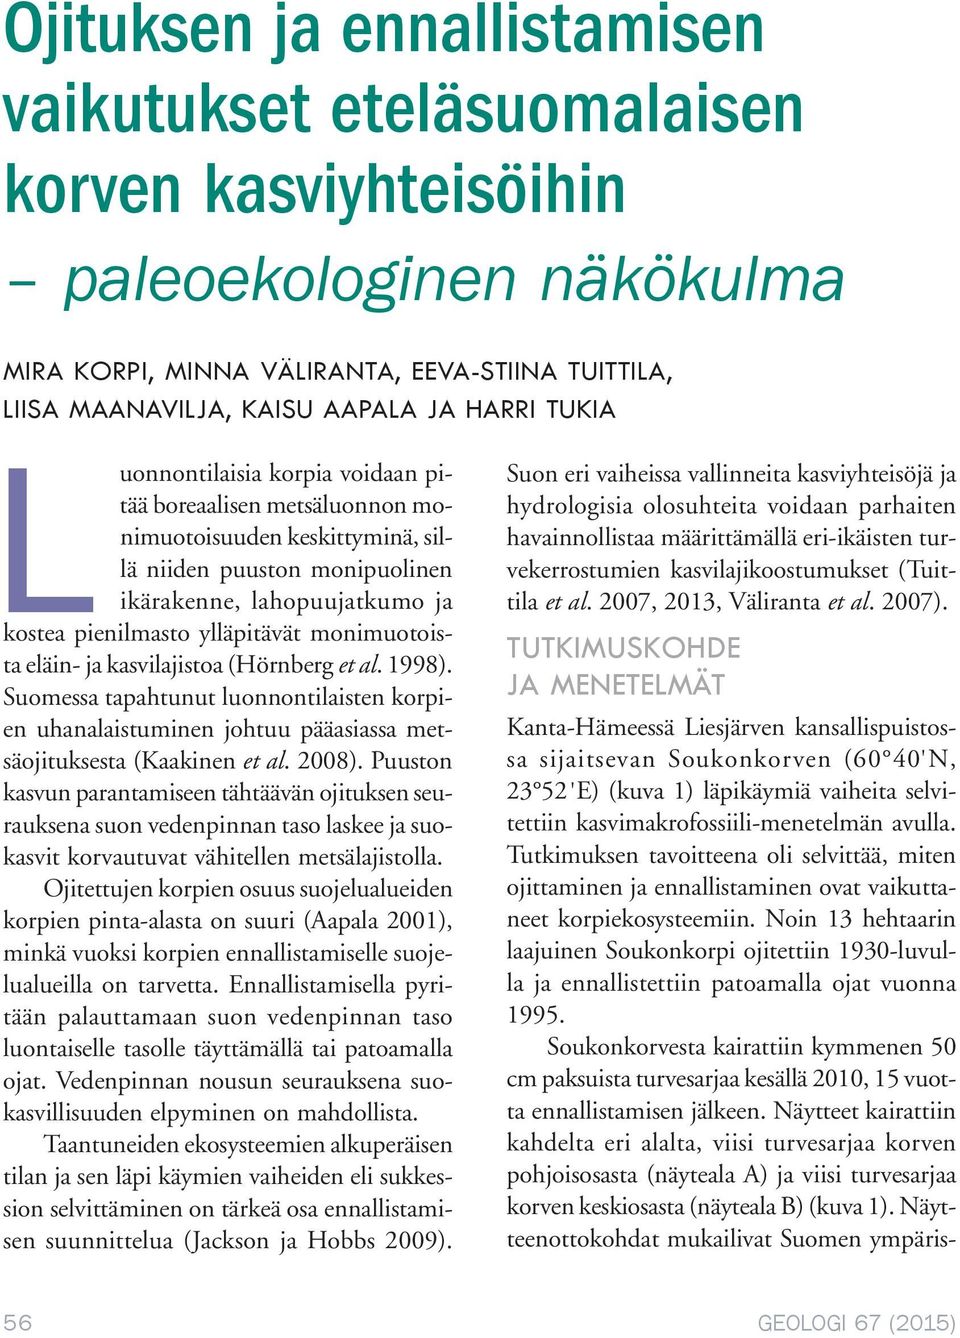 monimuotoista eläin- ja kasvilajistoa (Hörnberg et al. 1998). Suomessa tapahtunut luonnontilaisten korpien uhanalaistuminen johtuu pääasiassa metsäojituksesta (Kaakinen et al. 2008).